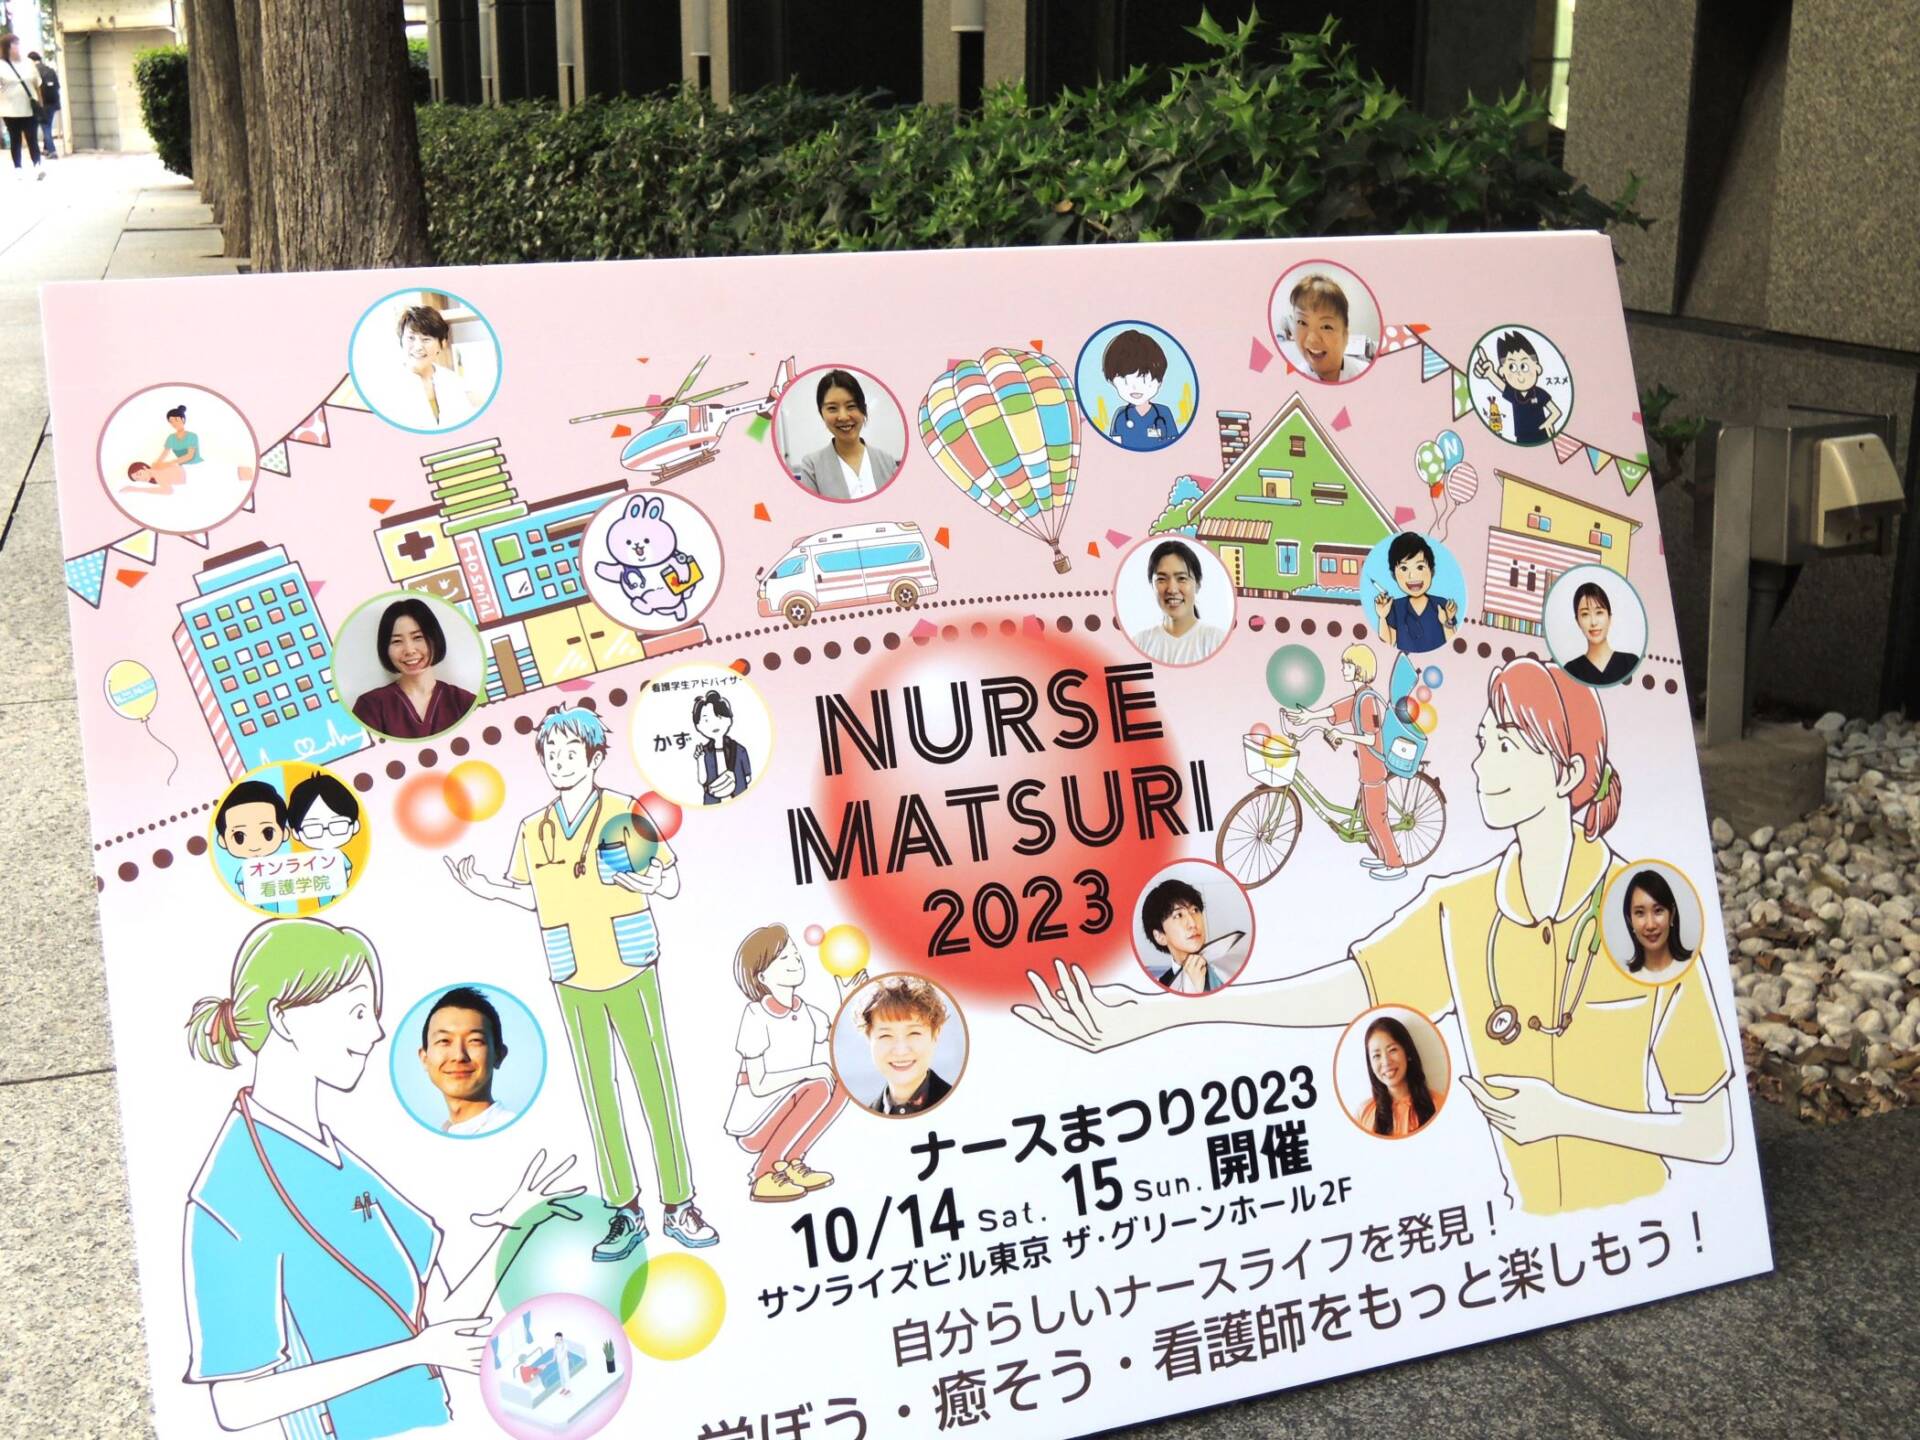 【イベントレポート】総勢731名の看護師が参加した「ナースまつり2023」